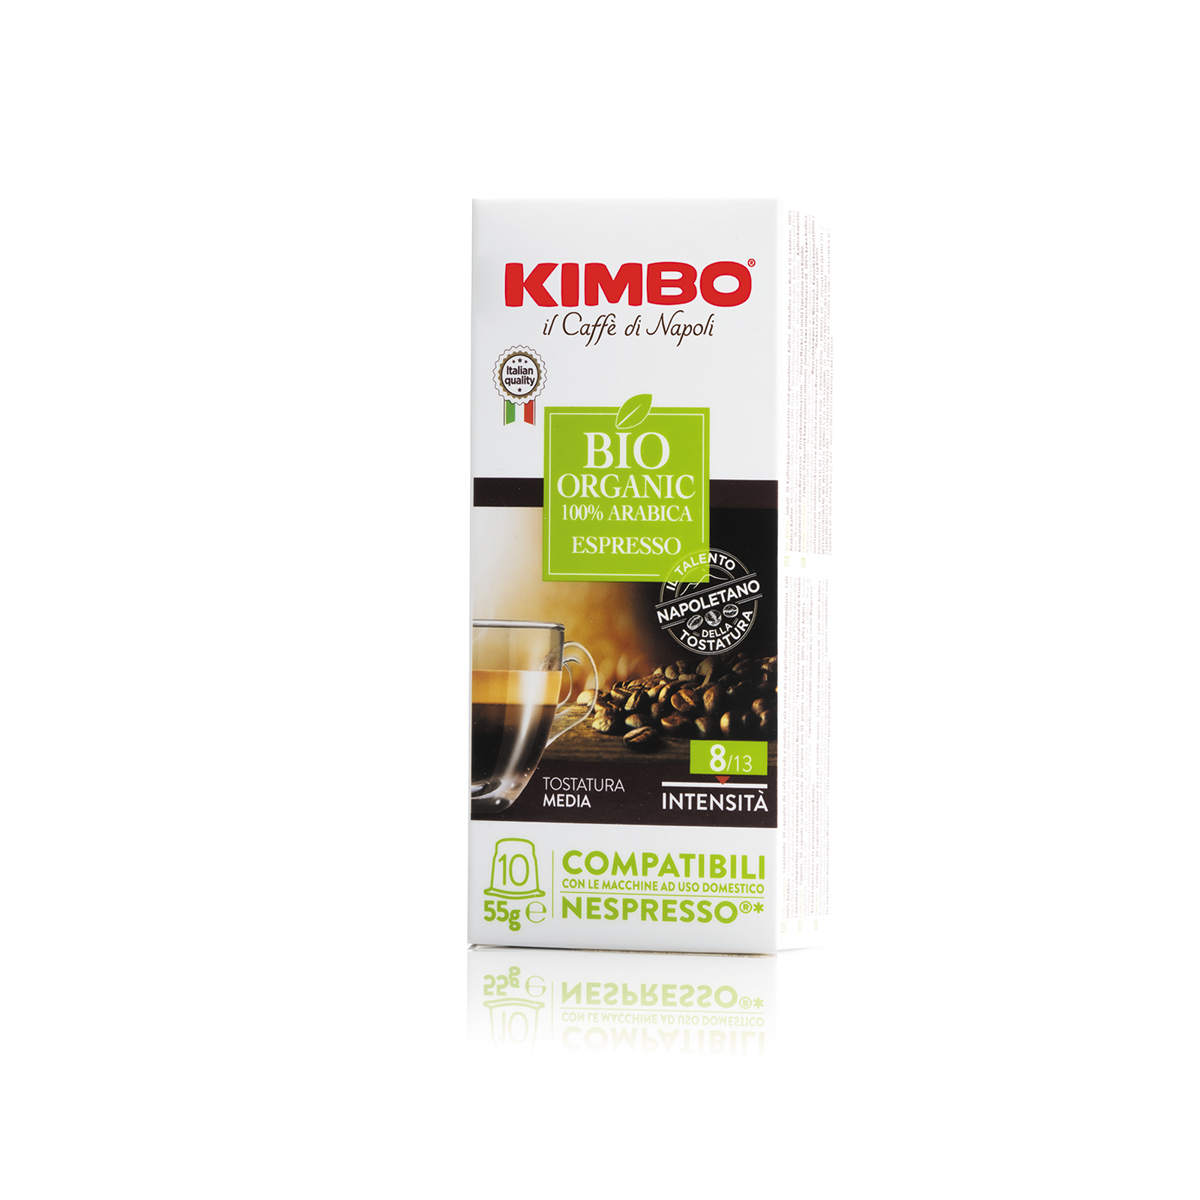 Kimbo il Caffe di Napoli Nespresso Original Compatible Capsules 10ct Bio Organic